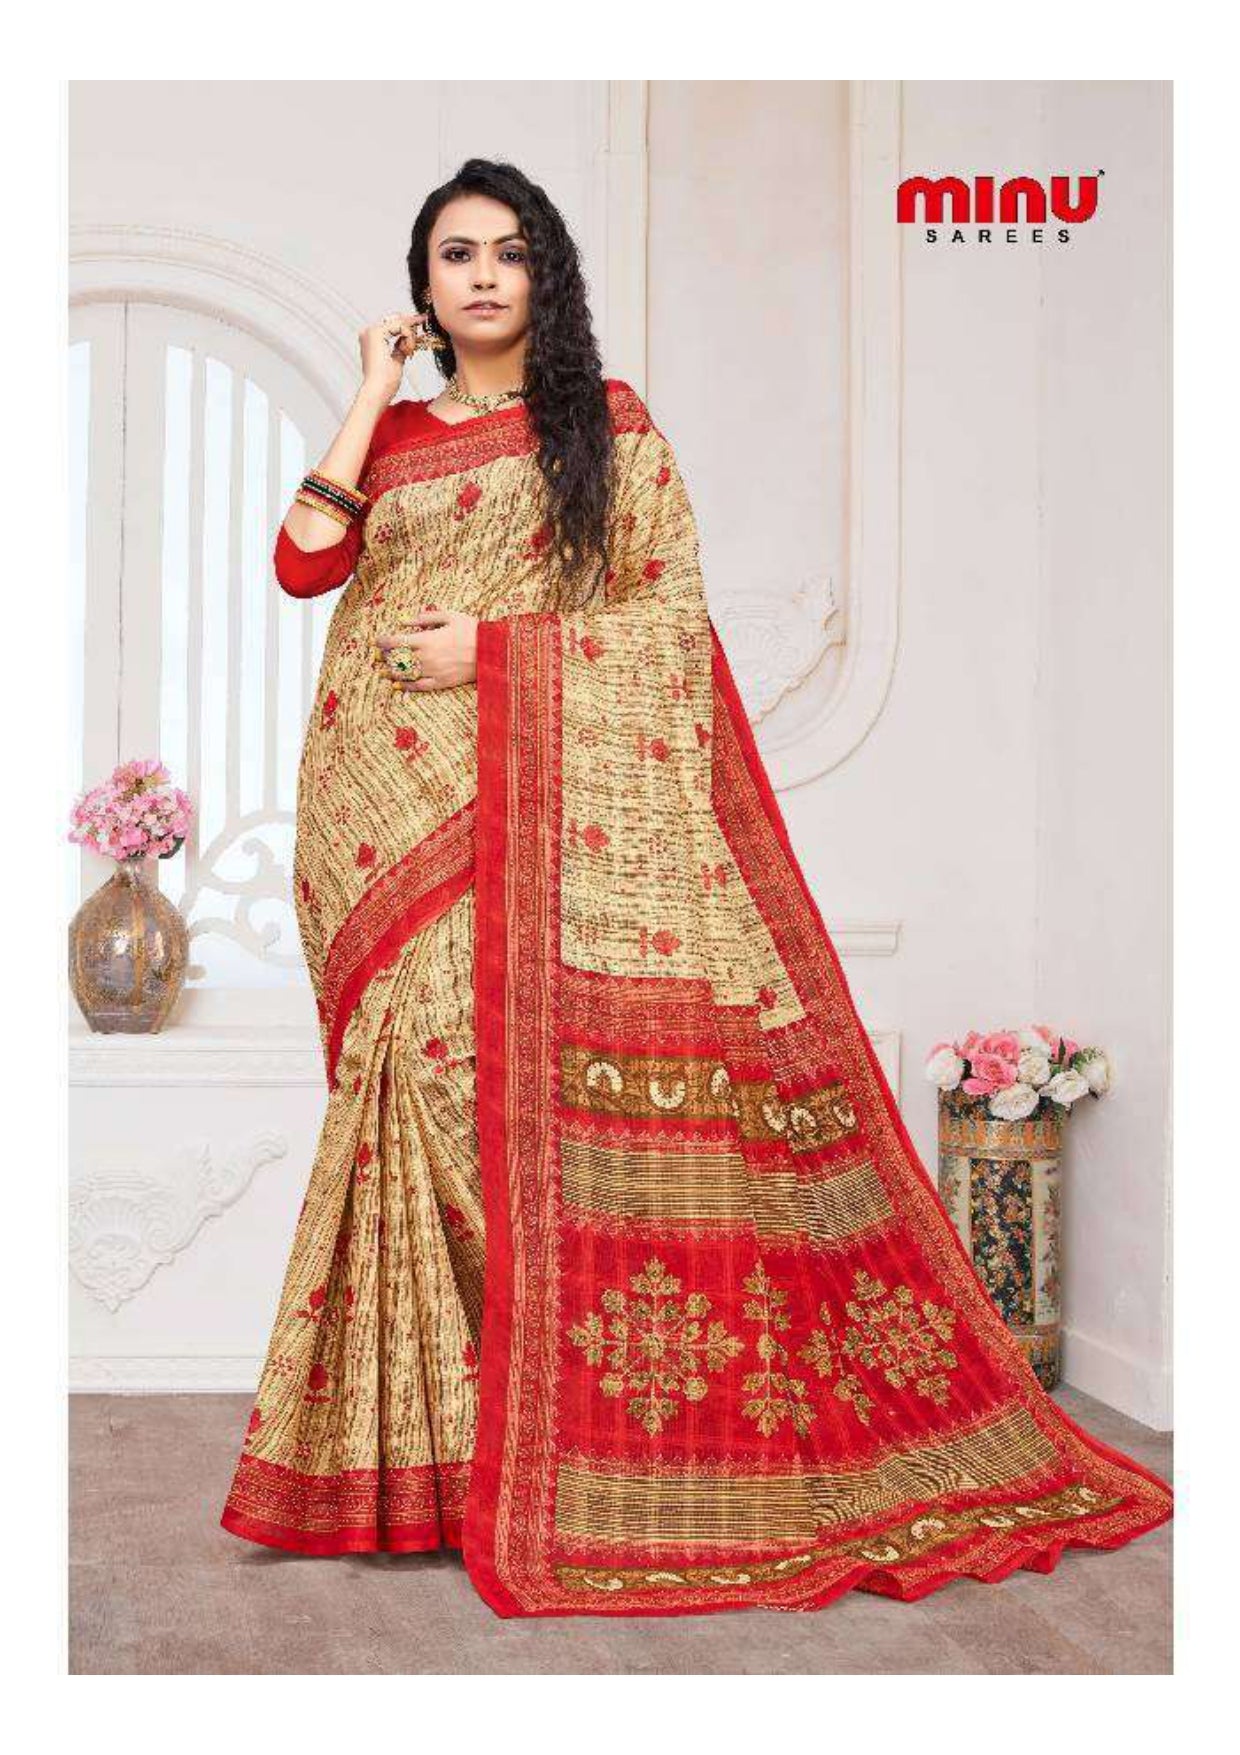 Low prices printed saree wearing woman image